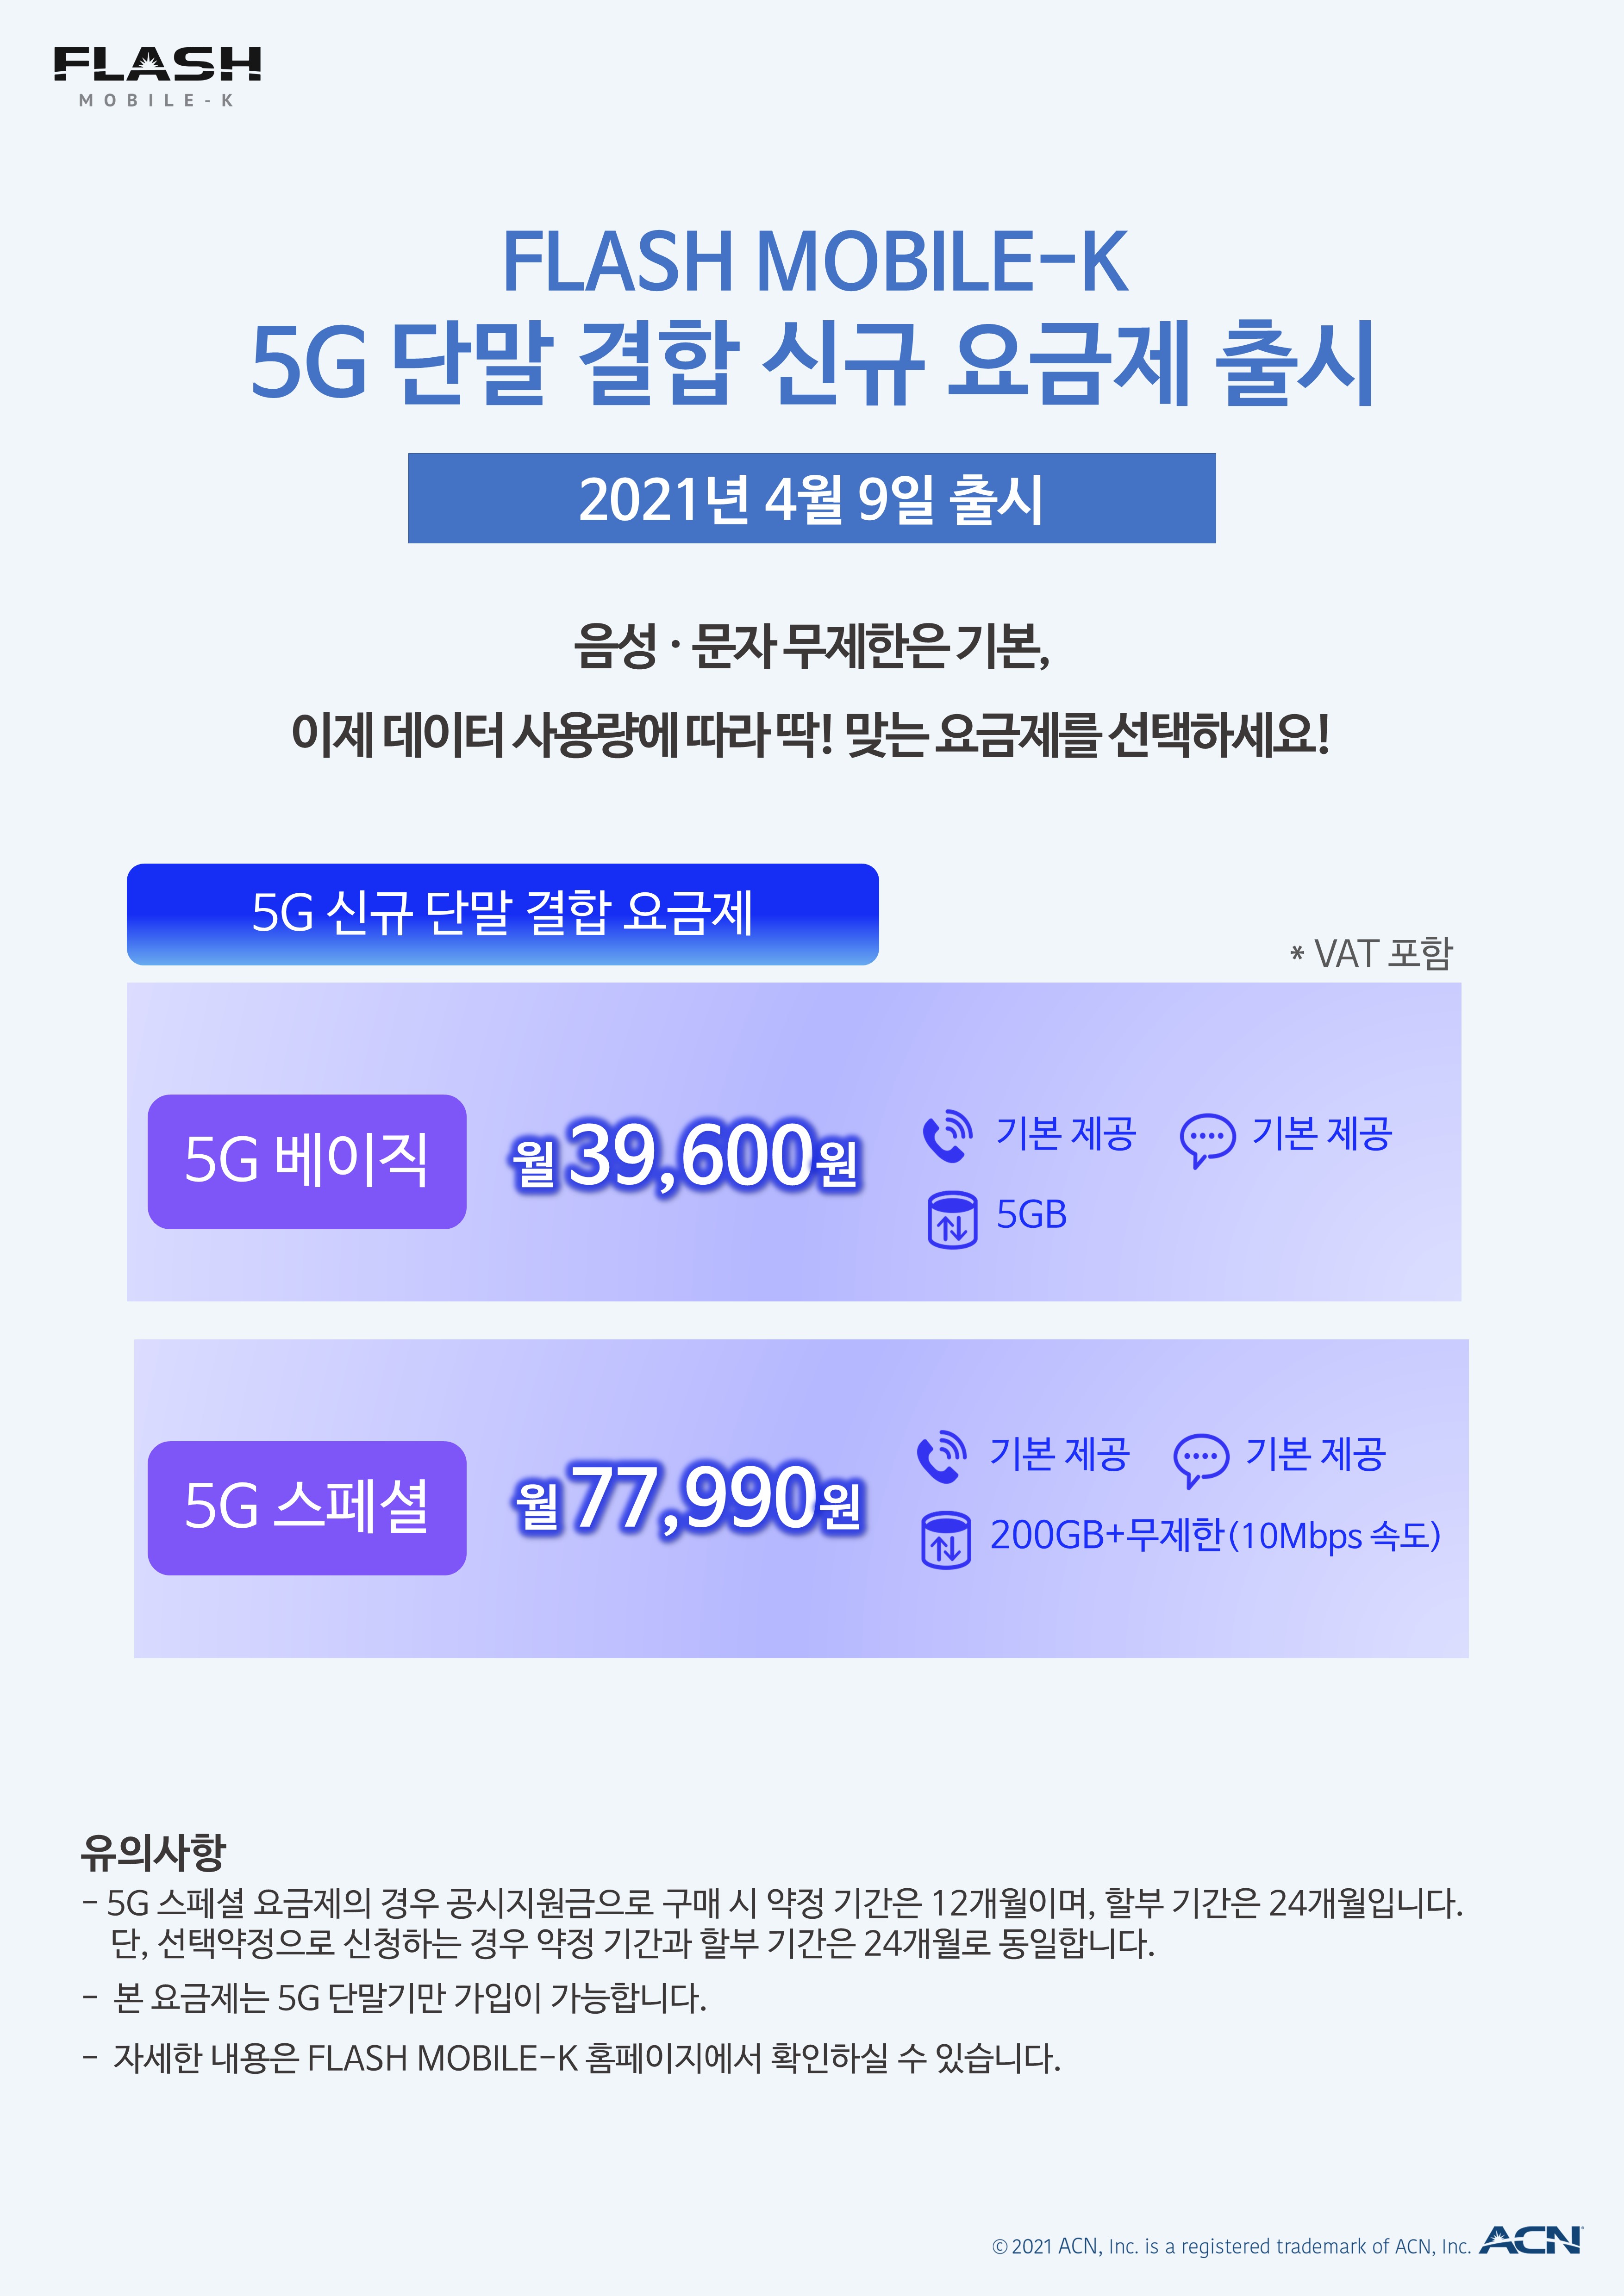 FLASH MOBILE-K 5G 단말 결합 신규 요금제 출시